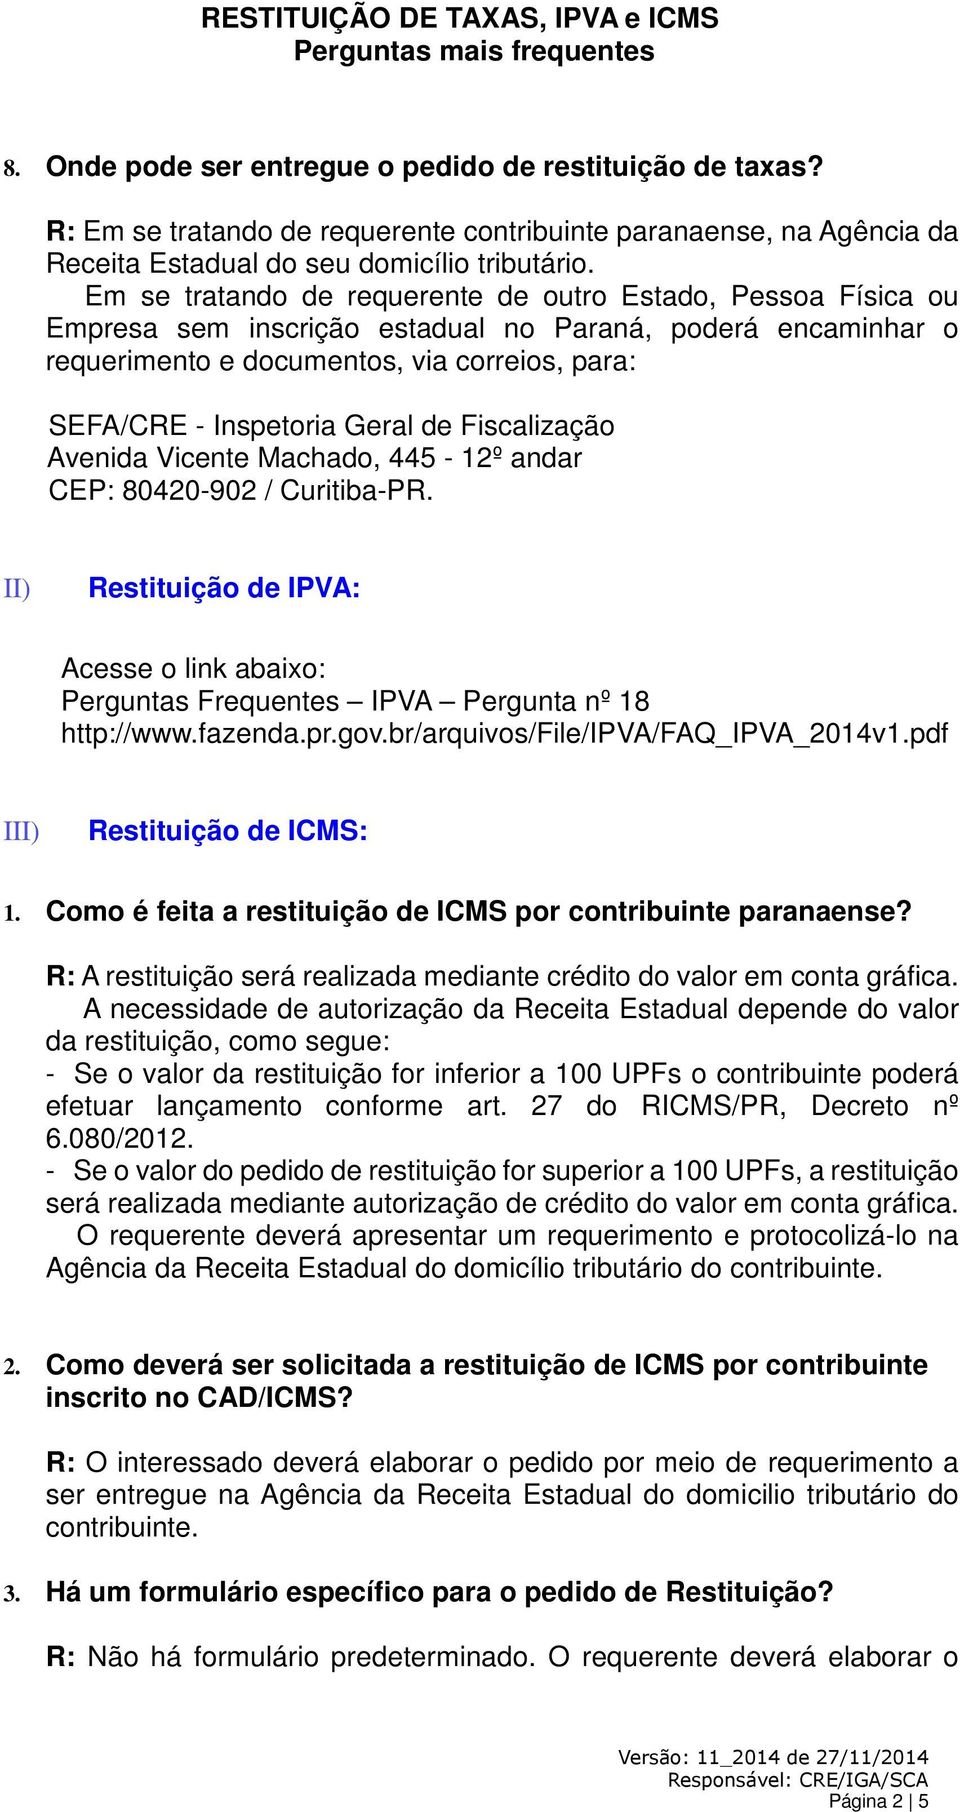 Acesse o link abaixo: Perguntas Frequentes IPVA Pergunta nº 18 http://www.fazenda.pr.gov.br/arquivos/file/ipva/faq_ipva_2014v1.pdf III) Restituição de ICMS: 1.